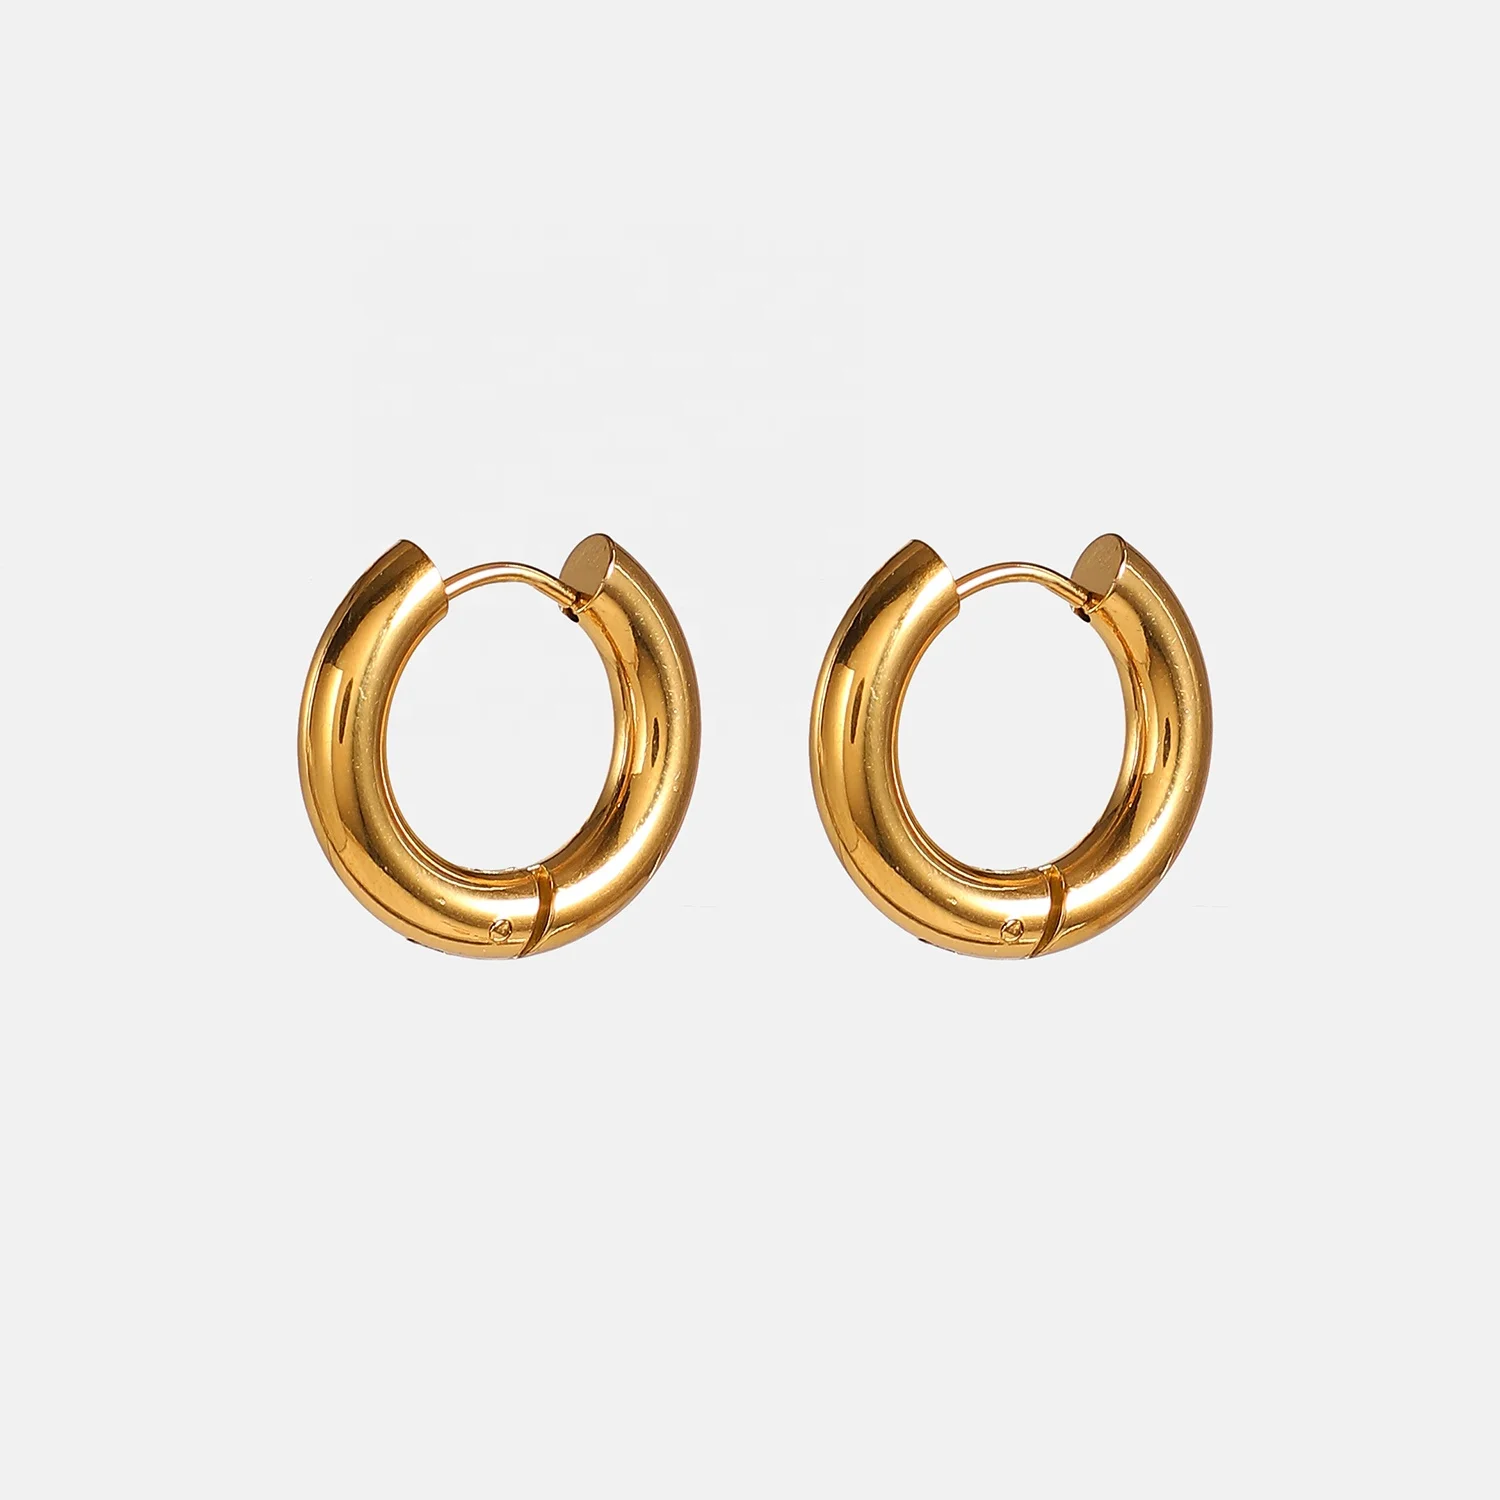 

Vintage Style 12mm 18K PVD Gold Plated Hoop Earring Geometric Stainless Steel Circle Hoop Earrings for Women